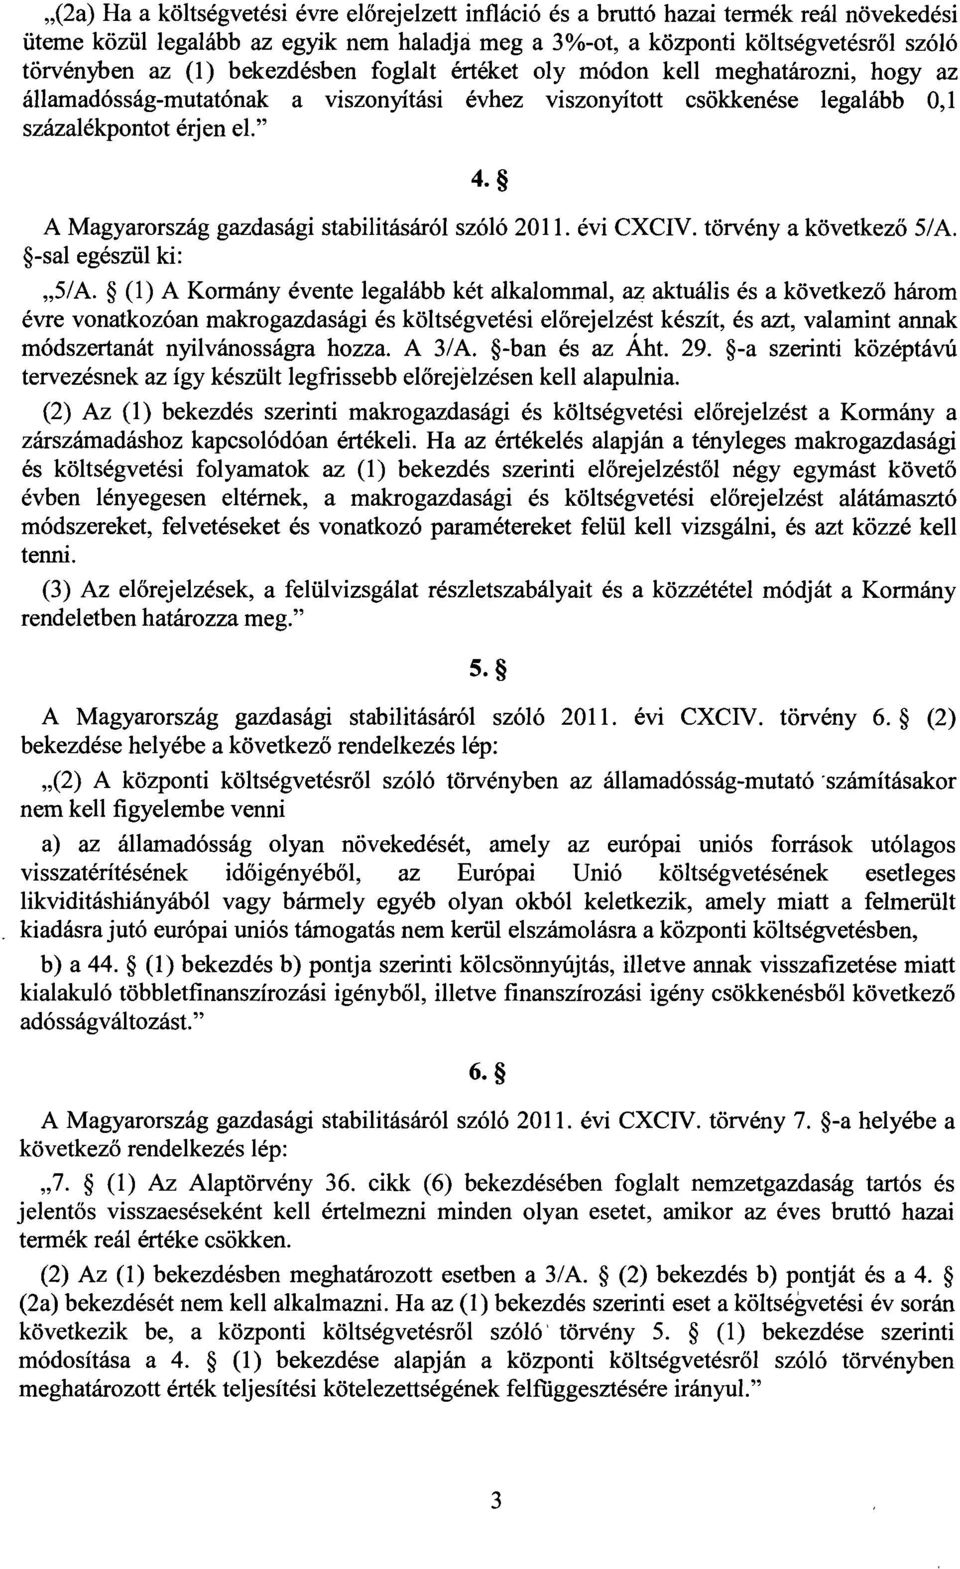 A Magyarország gazdasági stabilitásáról szóló 2011. évi CXCIV. törvény a következ ő 5/A. -sal egészül ki : 5/A.